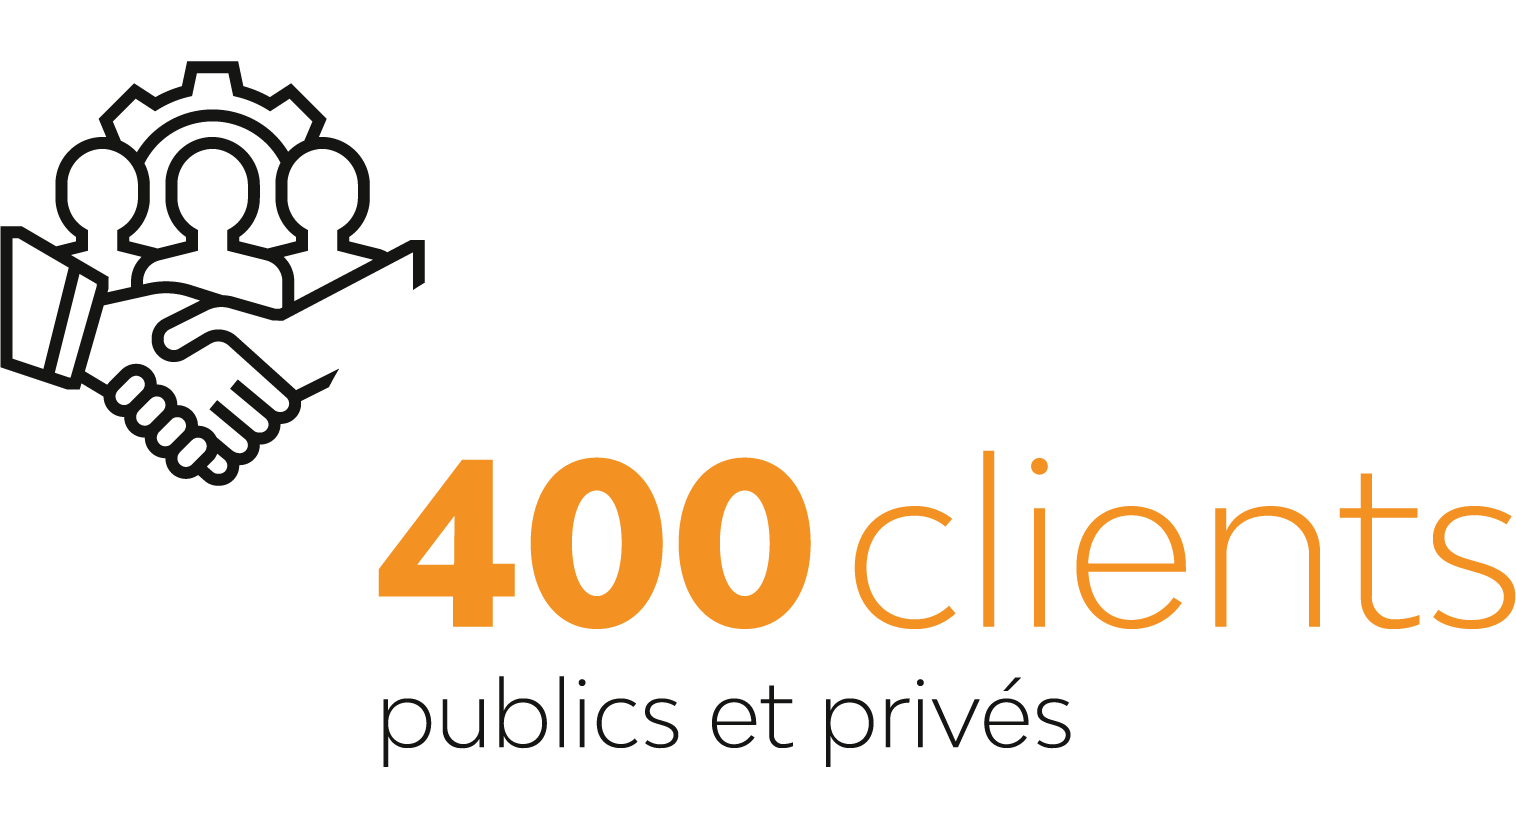 400 clients publics et privés